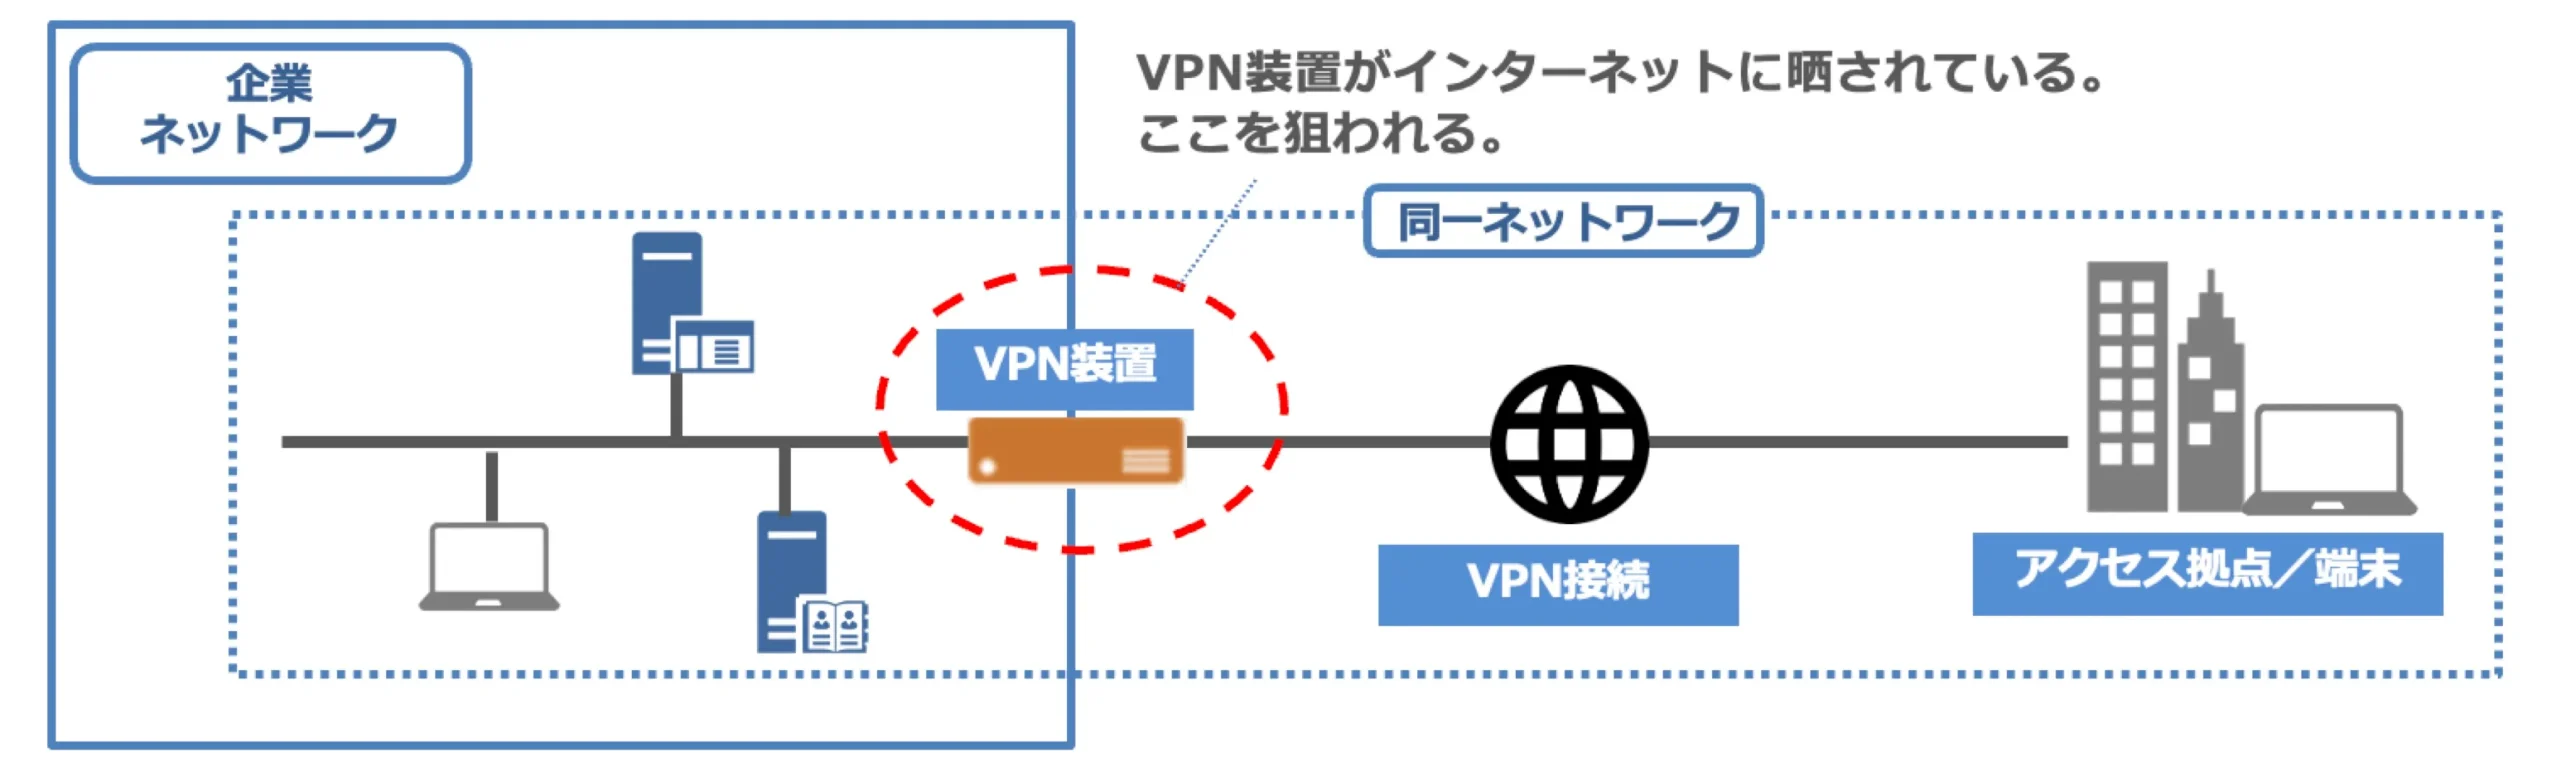 VPNの構成図